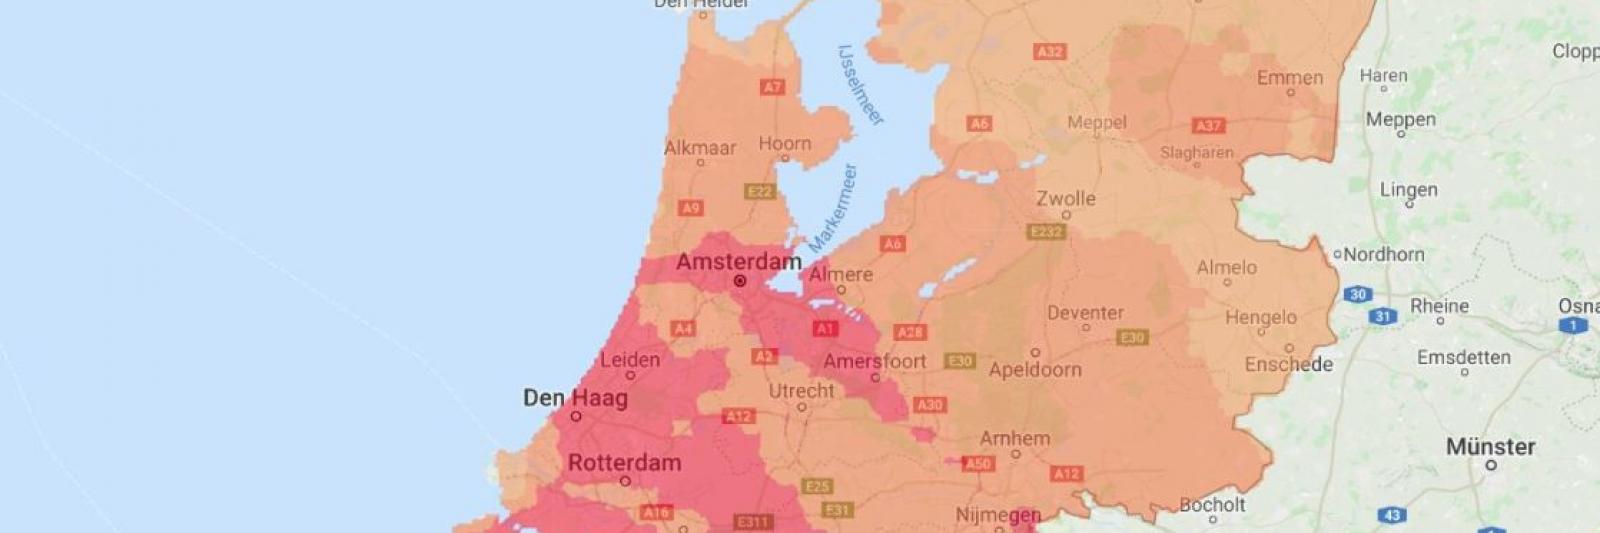 Wees Schaar homoseksueel Waarschuwing voor smog in 't Gooi, IJmond en Amsterdam - NH Nieuws